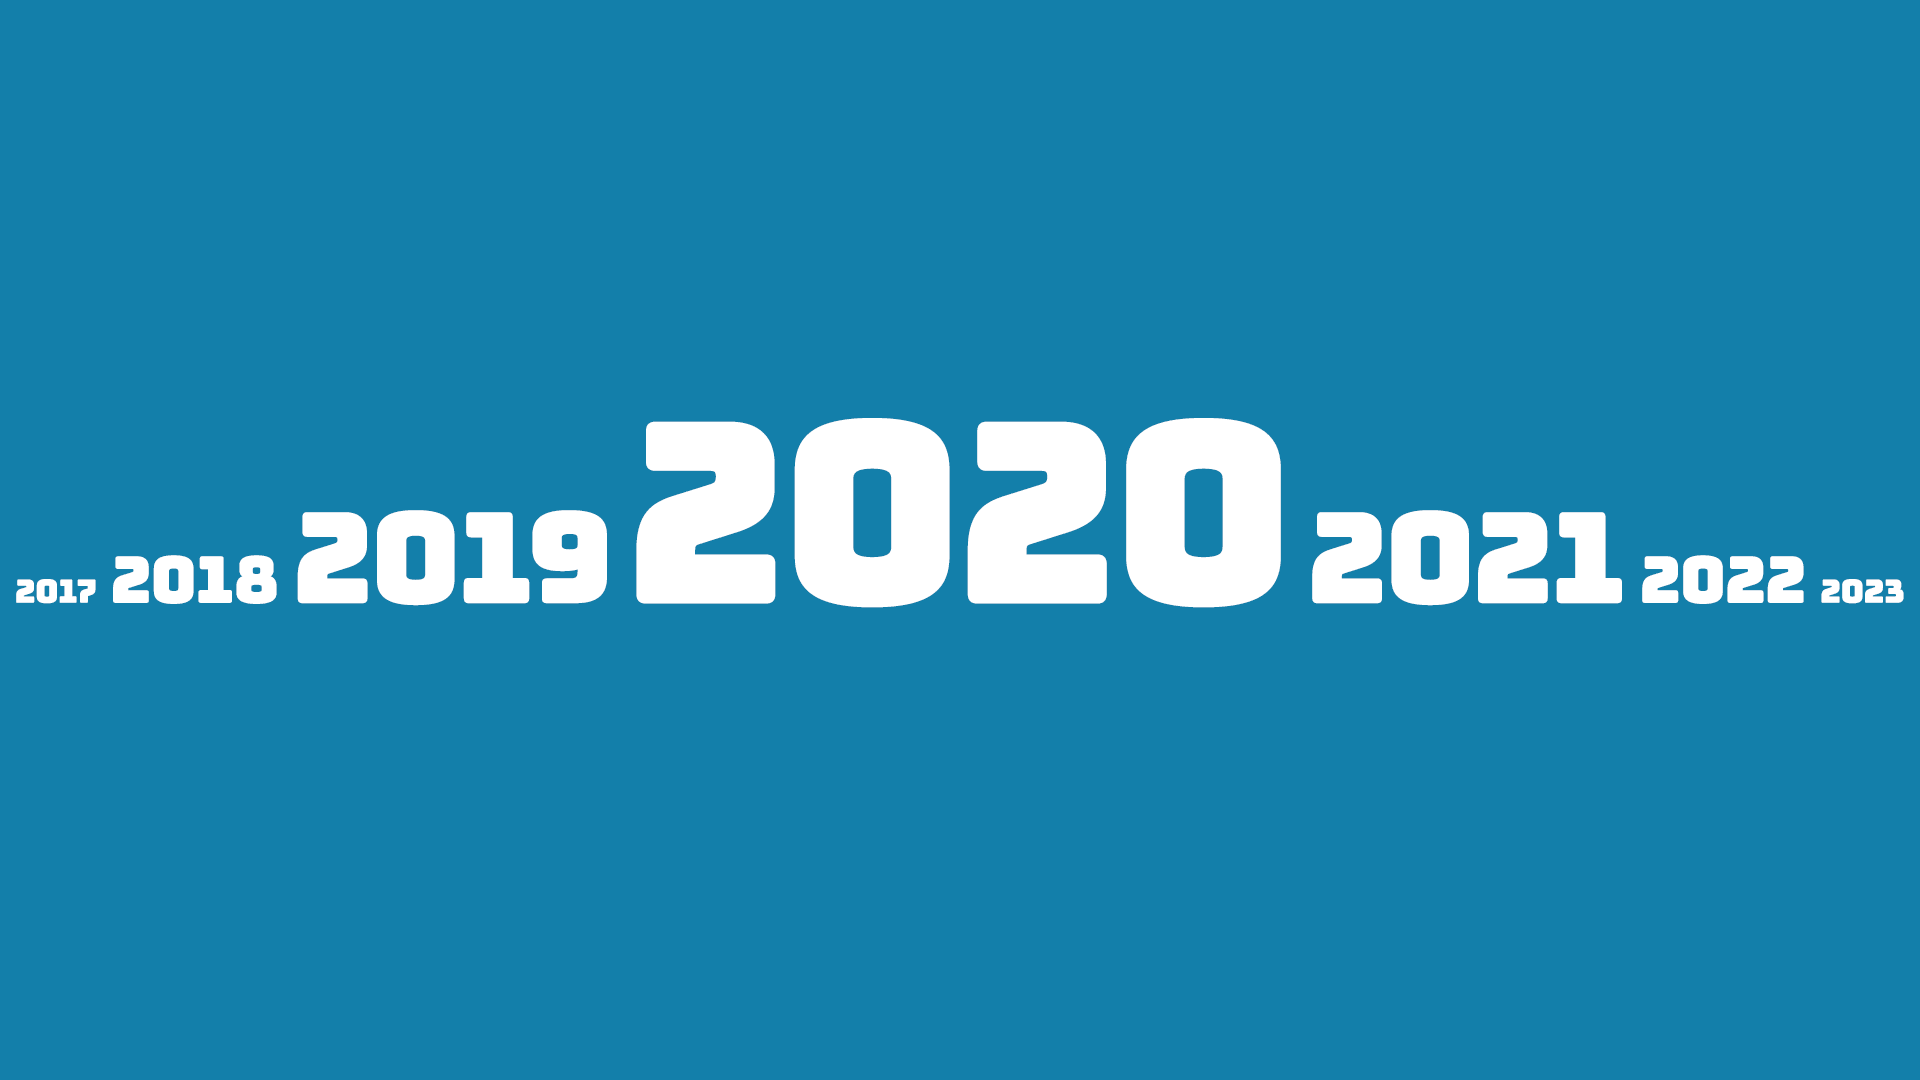 Co rok 2020 zmienił na lepsze?